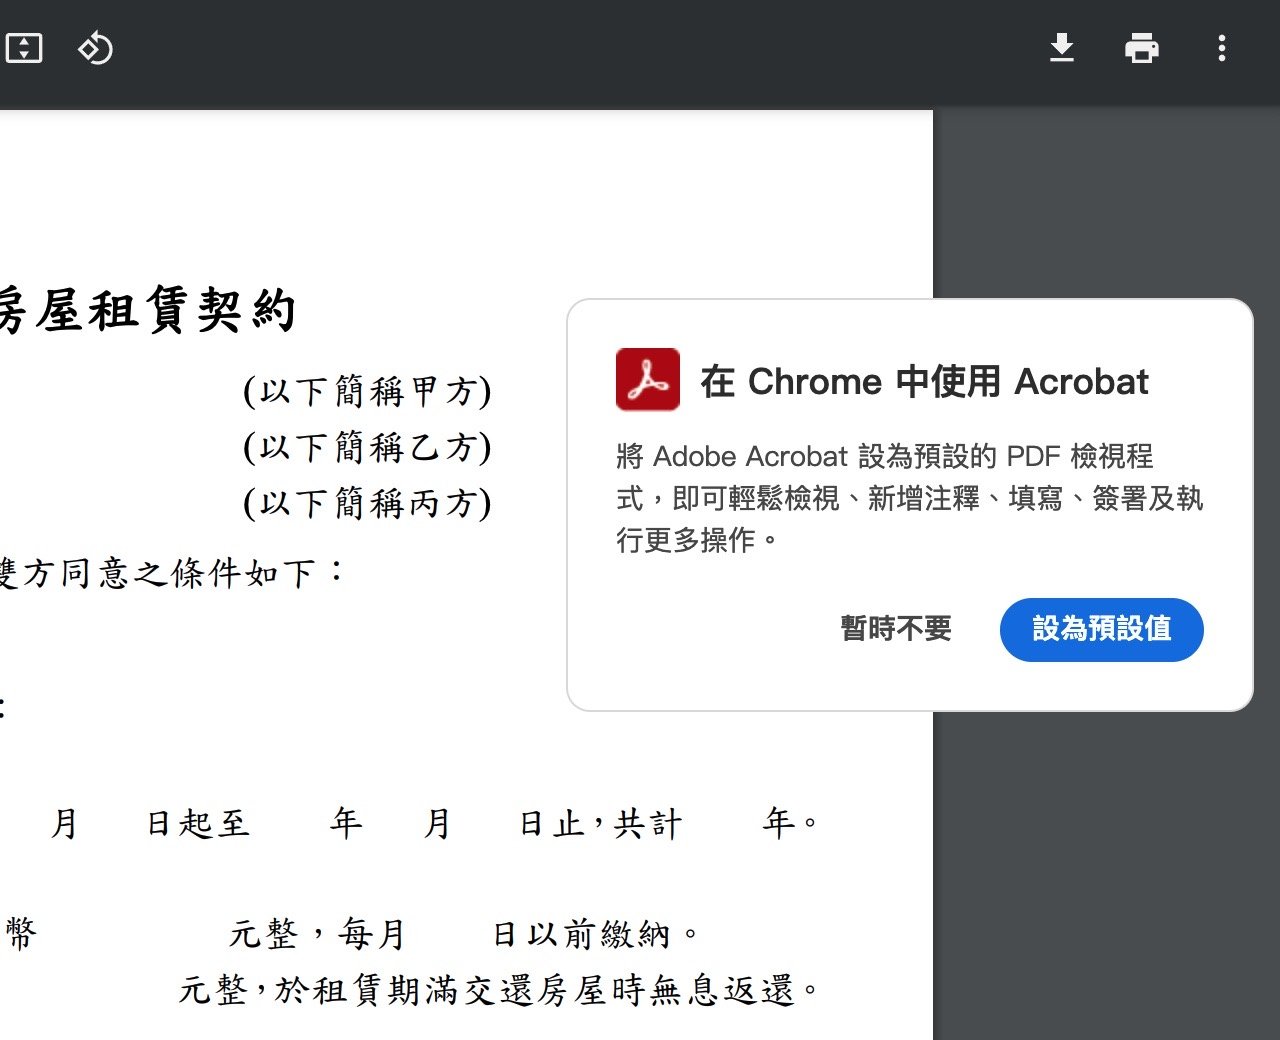 免費 Adobe Acrobat PDF 編輯器擴充功能